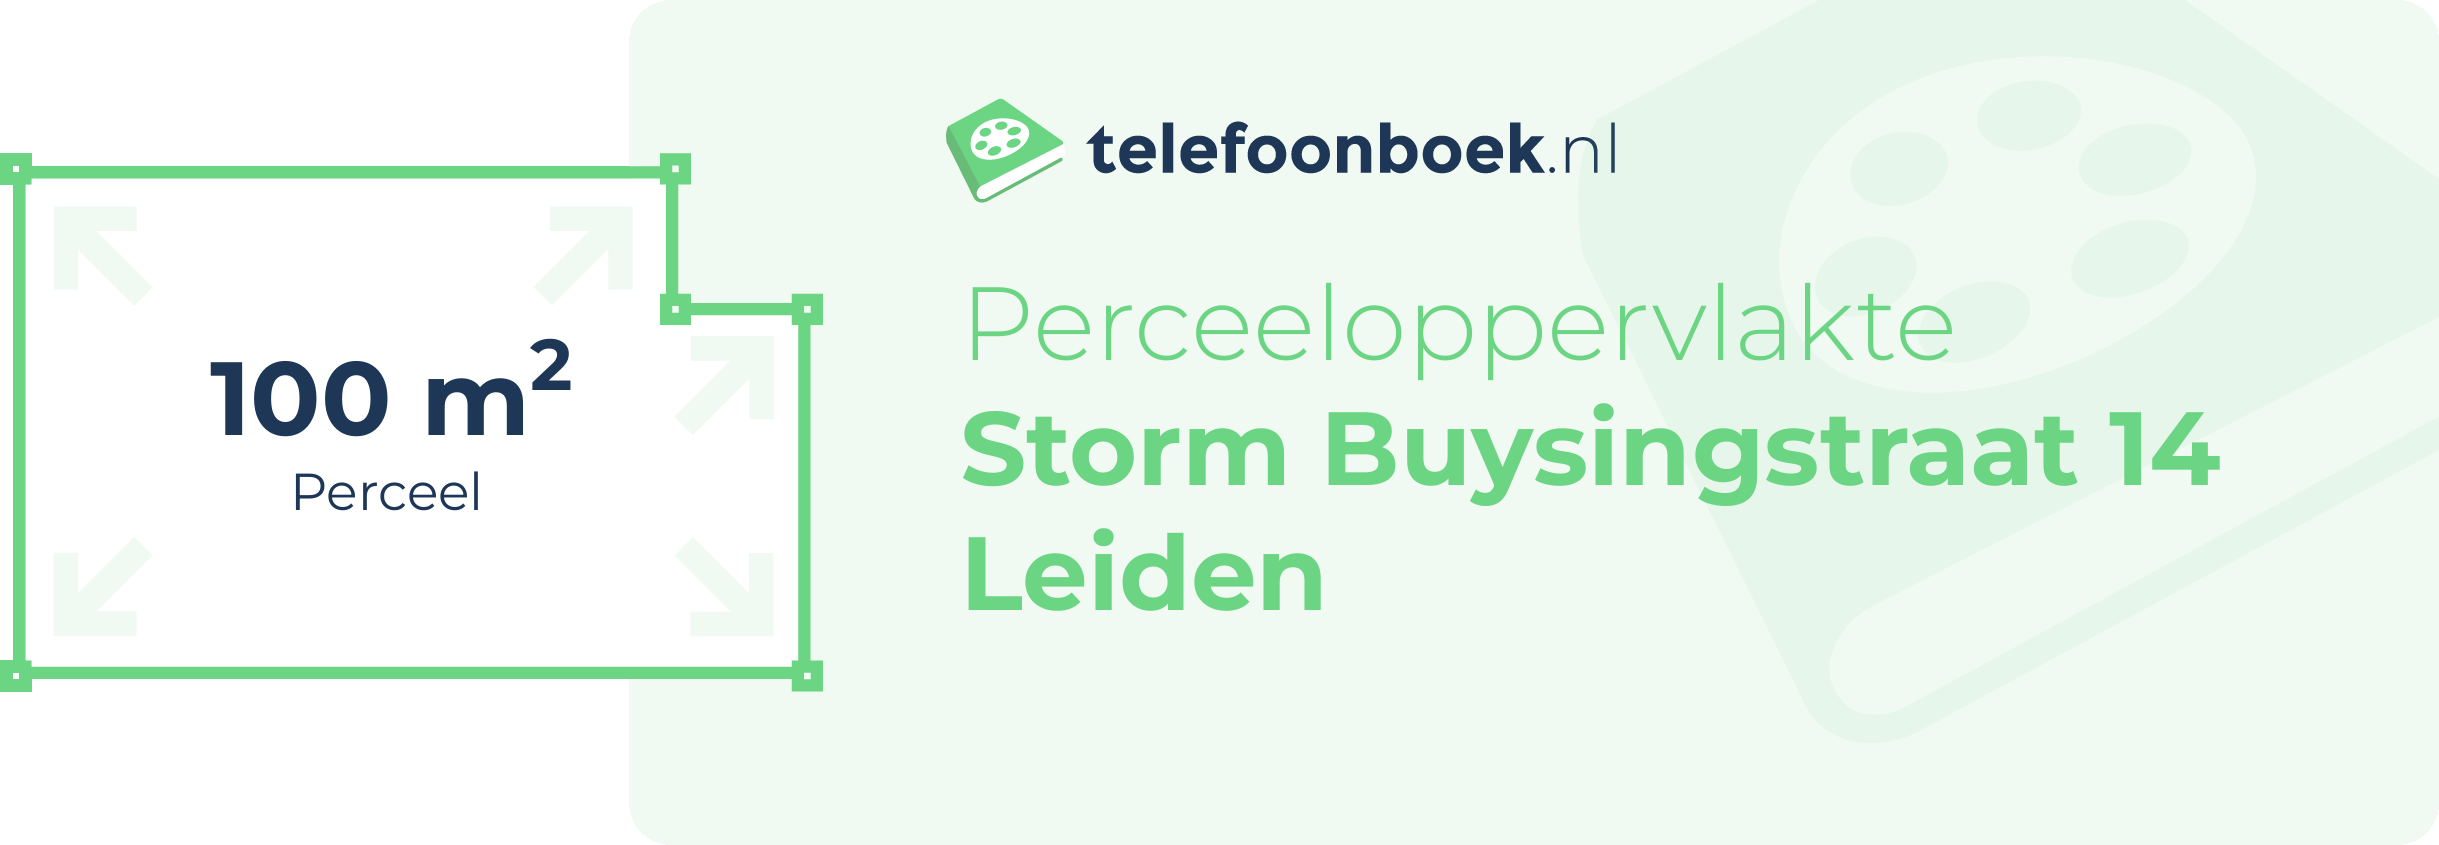 Perceeloppervlakte Storm Buysingstraat 14 Leiden